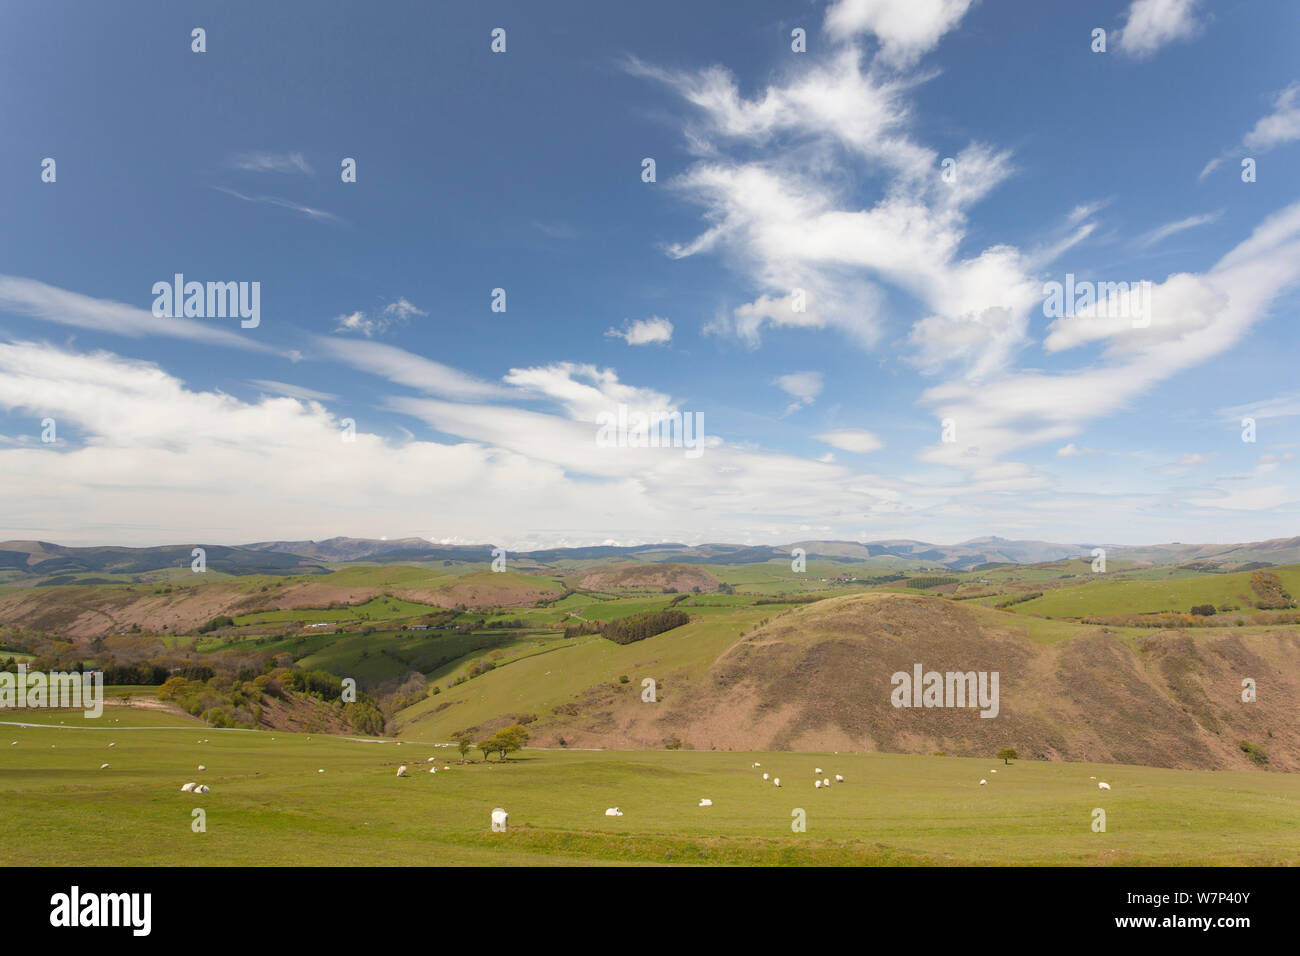 Vista sulla montagna agricola in orizzontale sul bordo della Vita Pumlumon Progetto Paesaggio, Cambrian Mountains, Ceredigion, Wales, Regno Unito, maggio 2012. Foto Stock